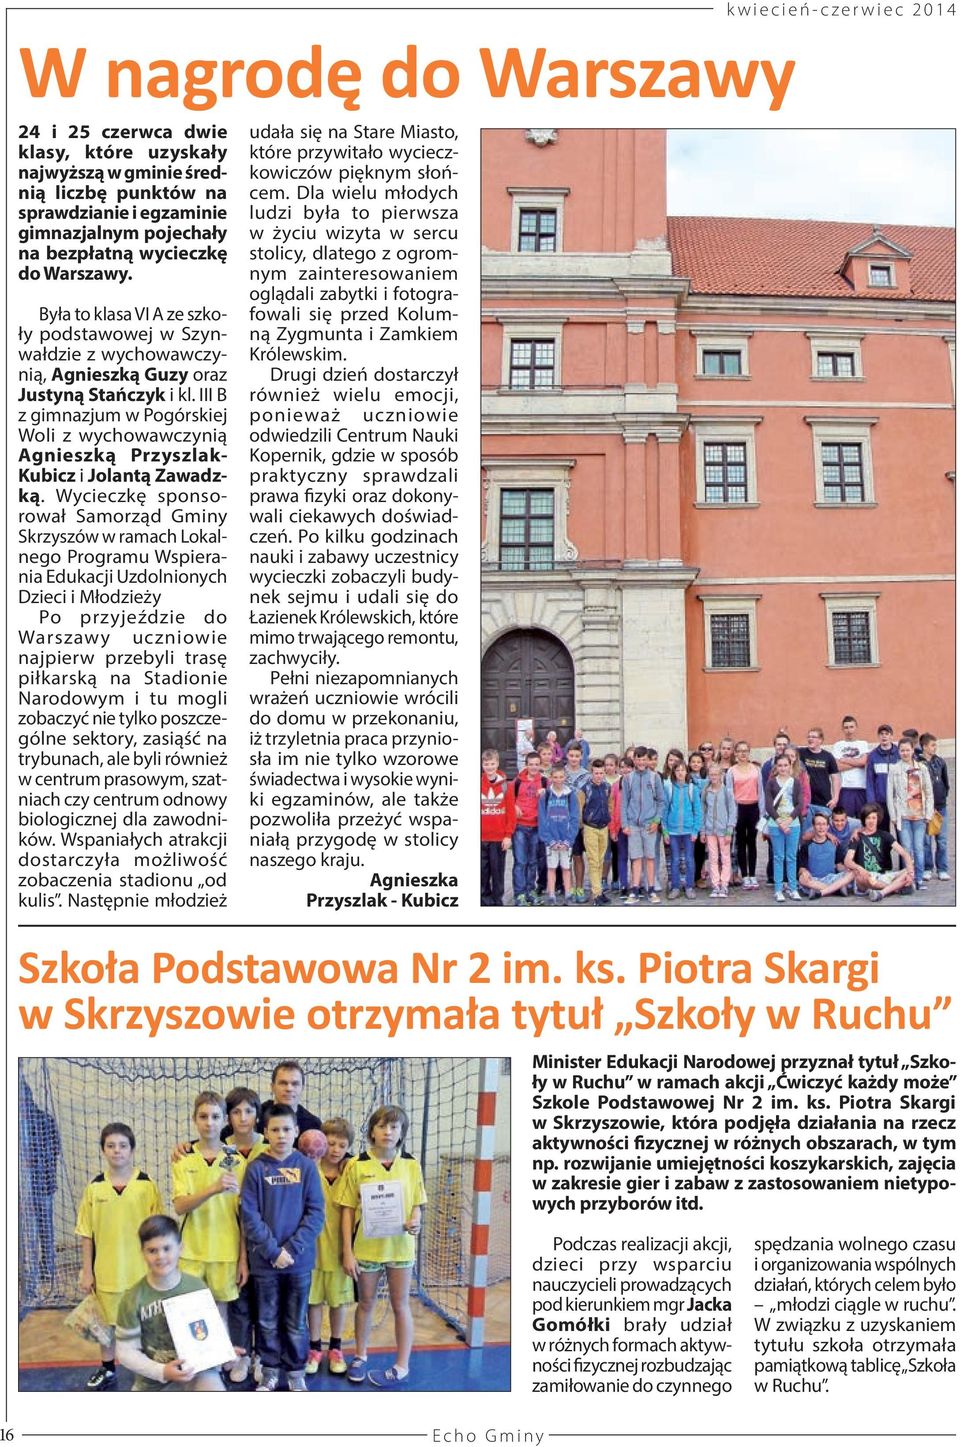 III B z gimnazjum w Pogórskiej Woli z wychowawczynią Agnieszką Przyszlak- Kubicz i Jolantą Zawadzką.